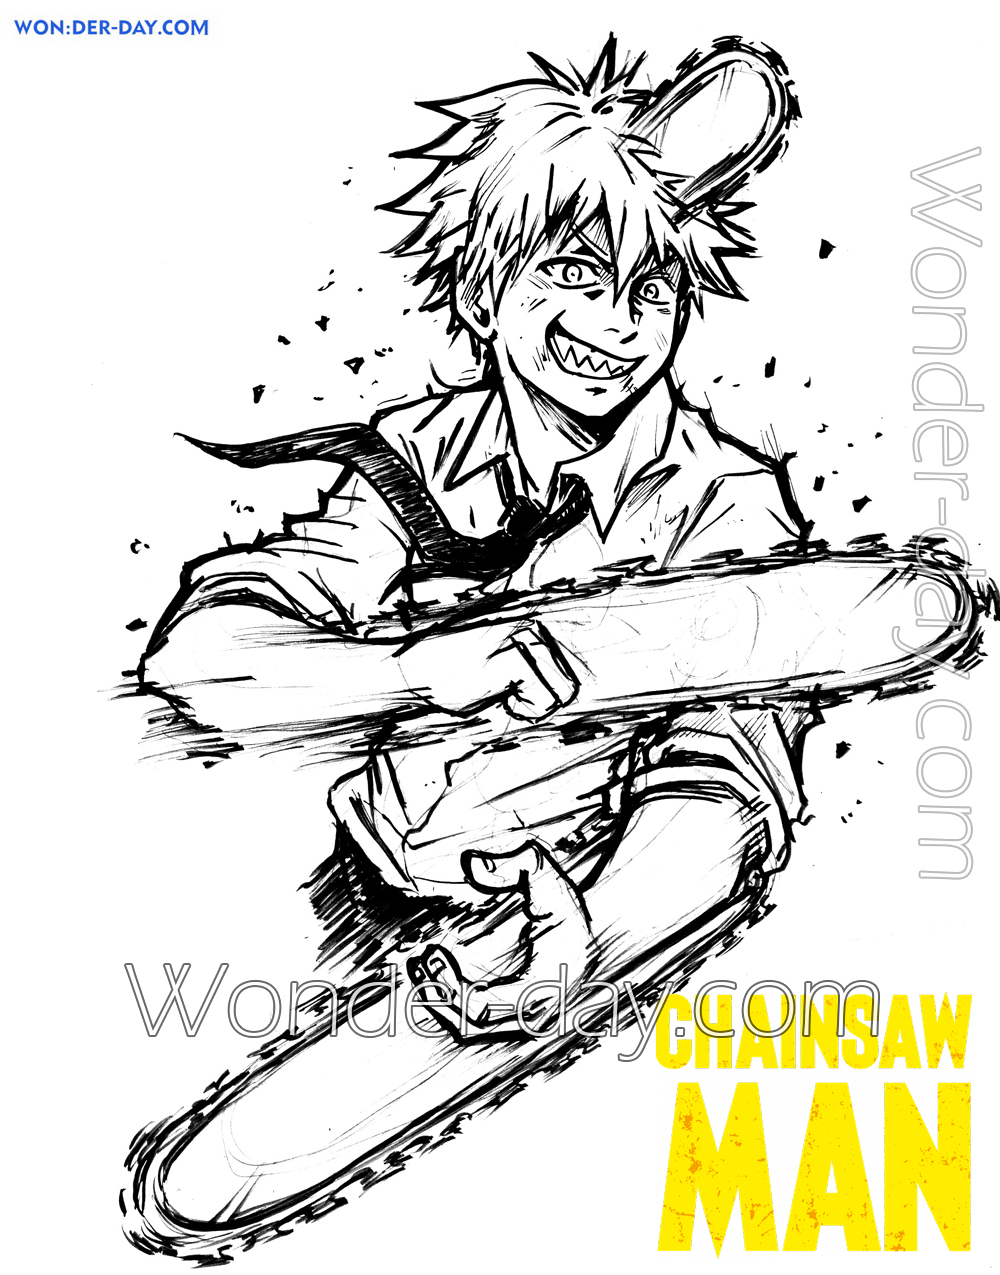 Desenhos de Chainsaw Man para Colorir, Pintar e Imprimir